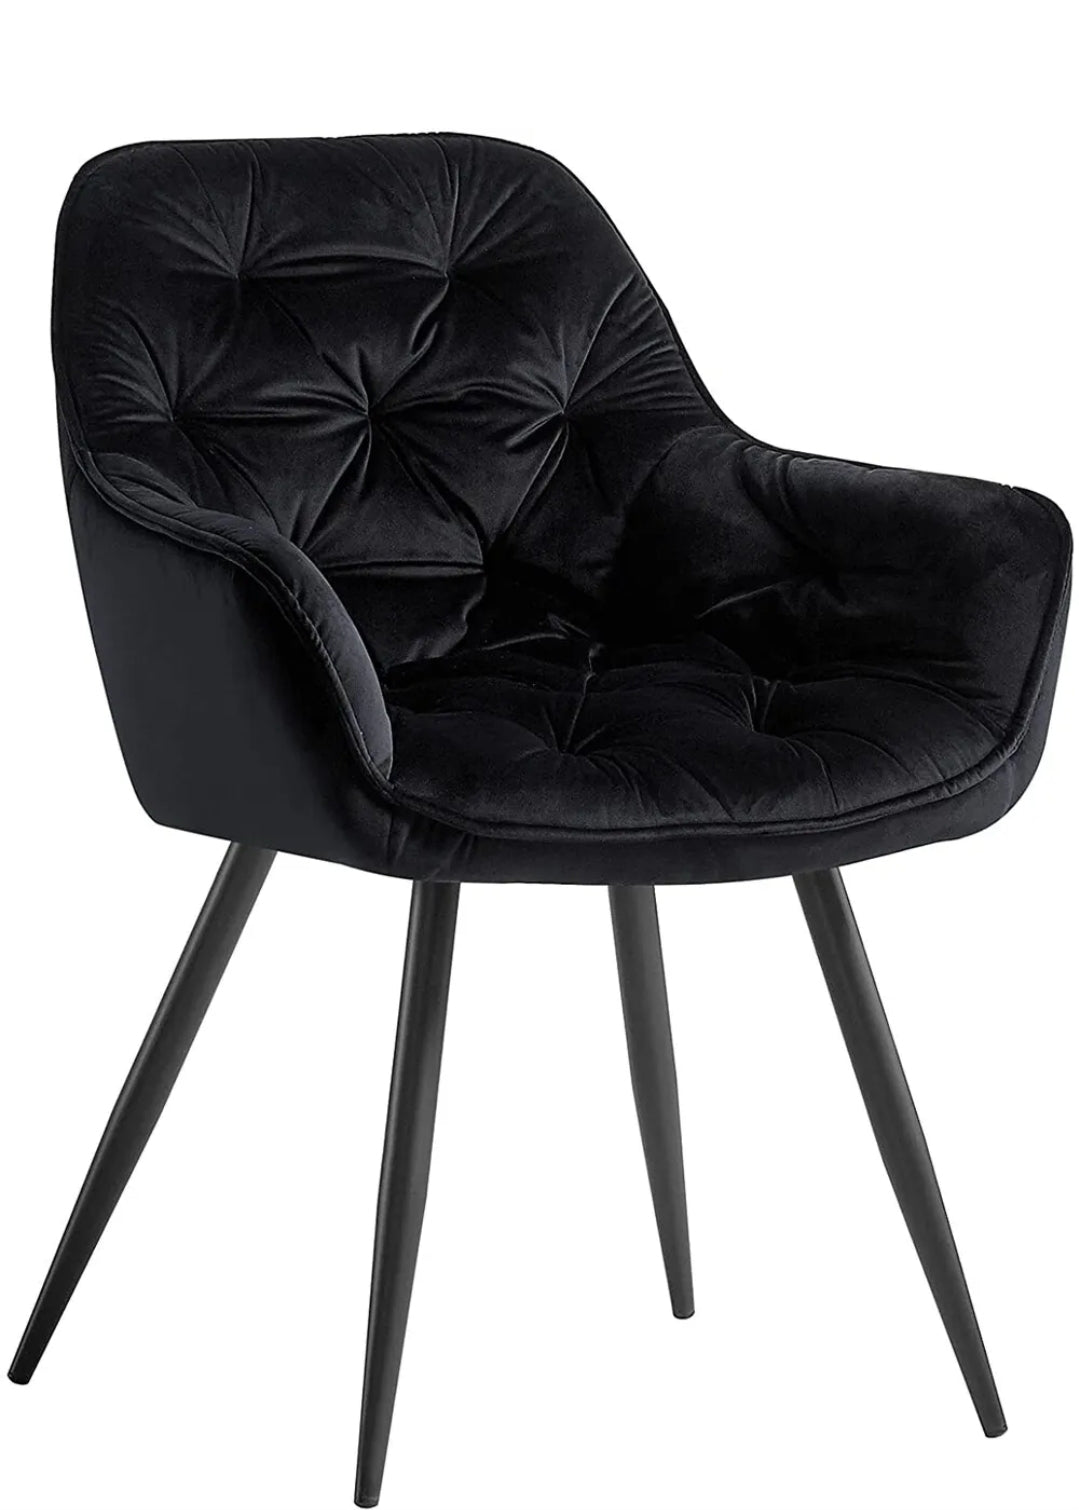 Black velvet dining chairs. Set of 2 or 4